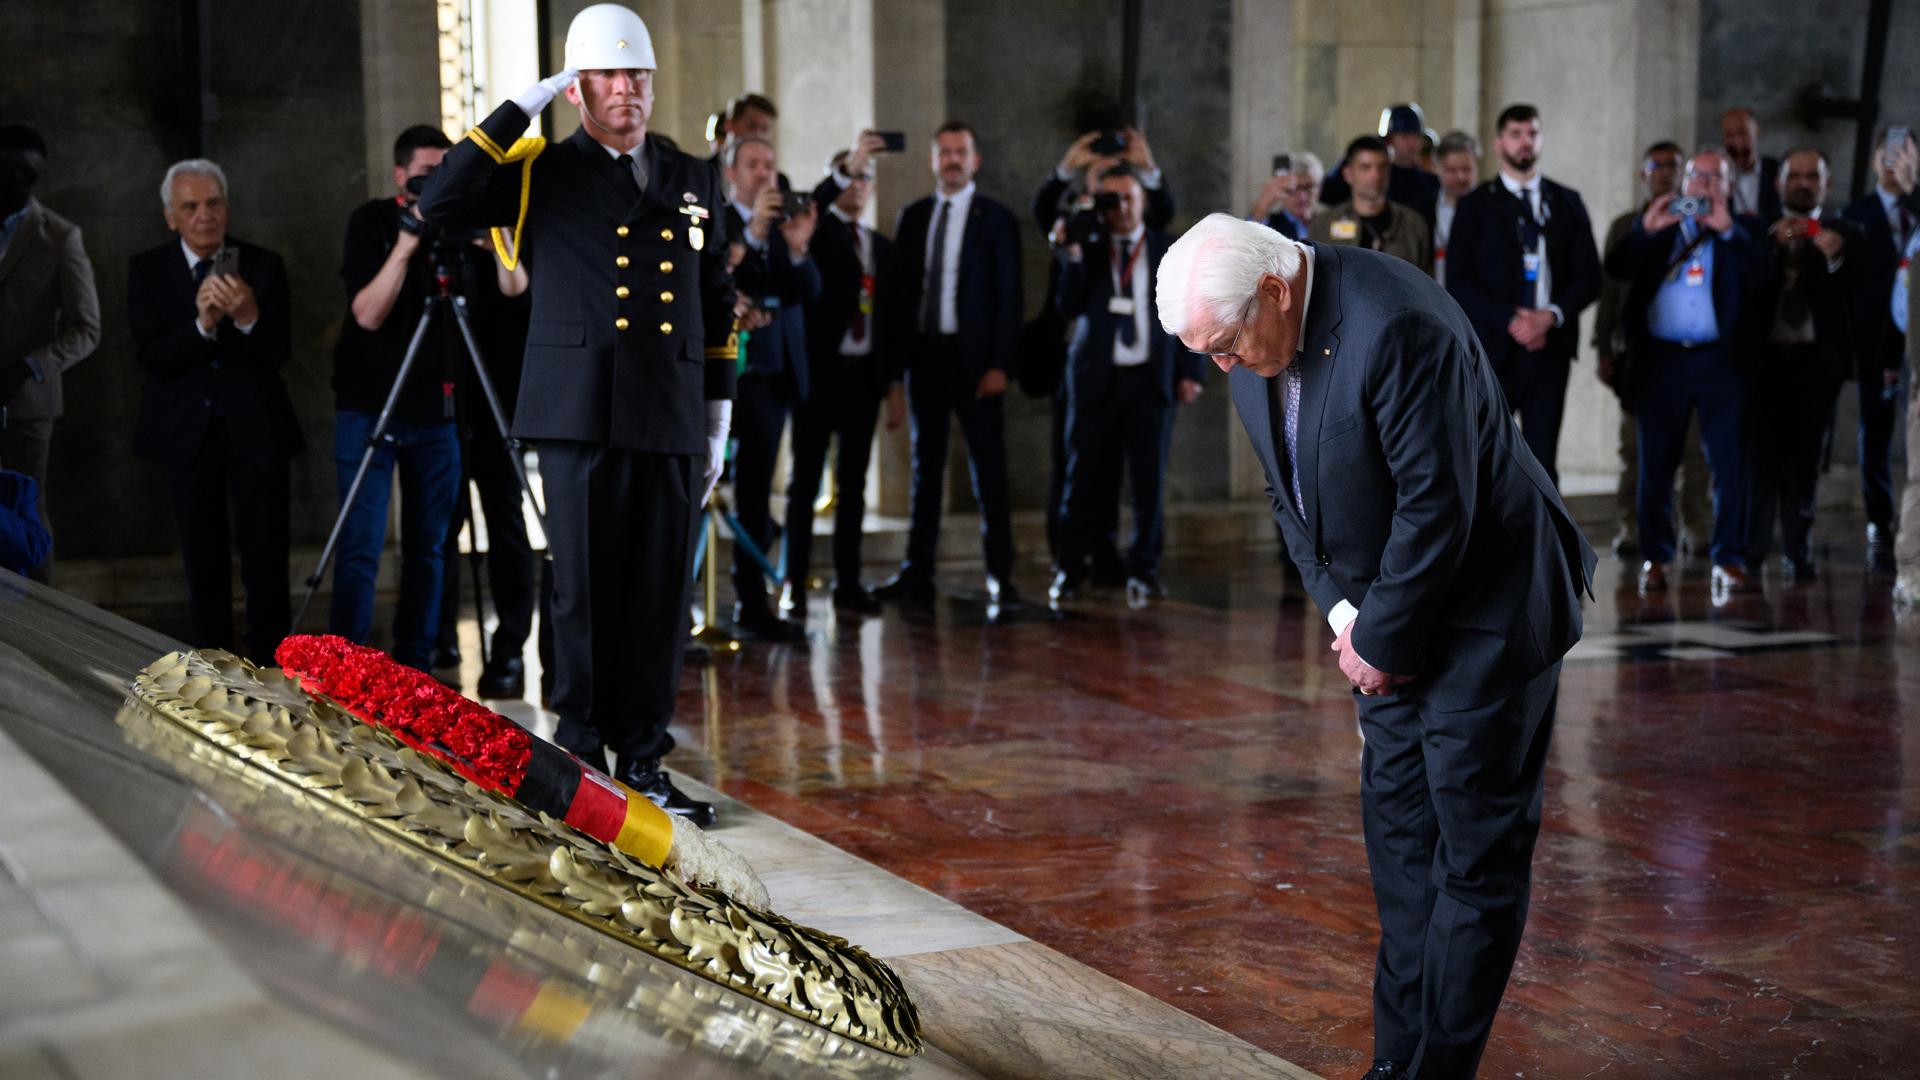 Bundespräsident Steinmeier verneigt sich vor dem Grab des türkischen Republikgründers Atatürk. Dort liegt ein Kranz mit deutschen Nationalfahnen.